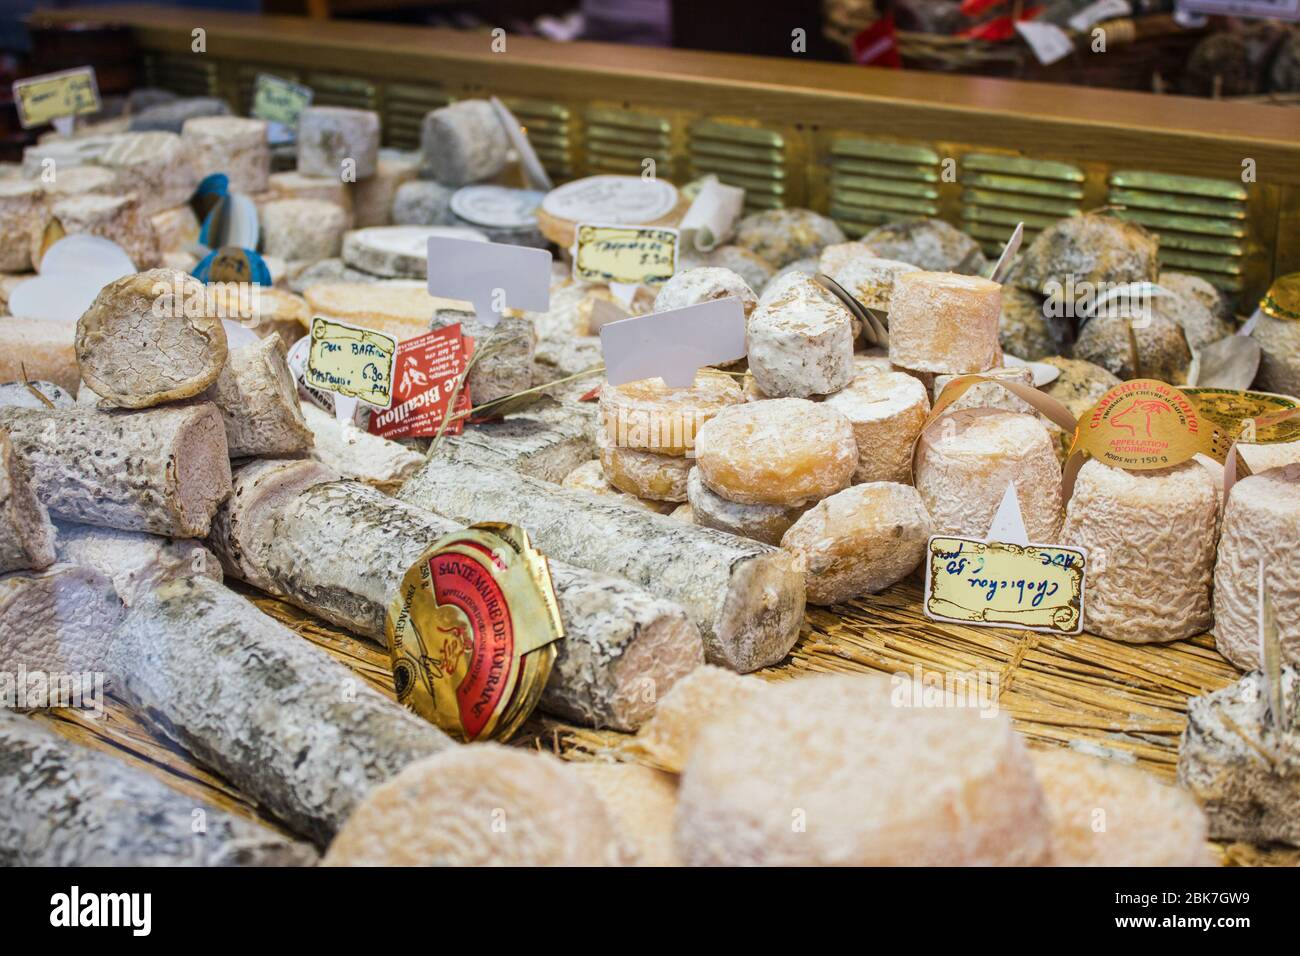 Paris - Circa mai 2011: Boutique de fromages français avec une sélection de fromages Camembert, Coulommiers, Munster, Gruyere, Comte et parmesan. Banque D'Images